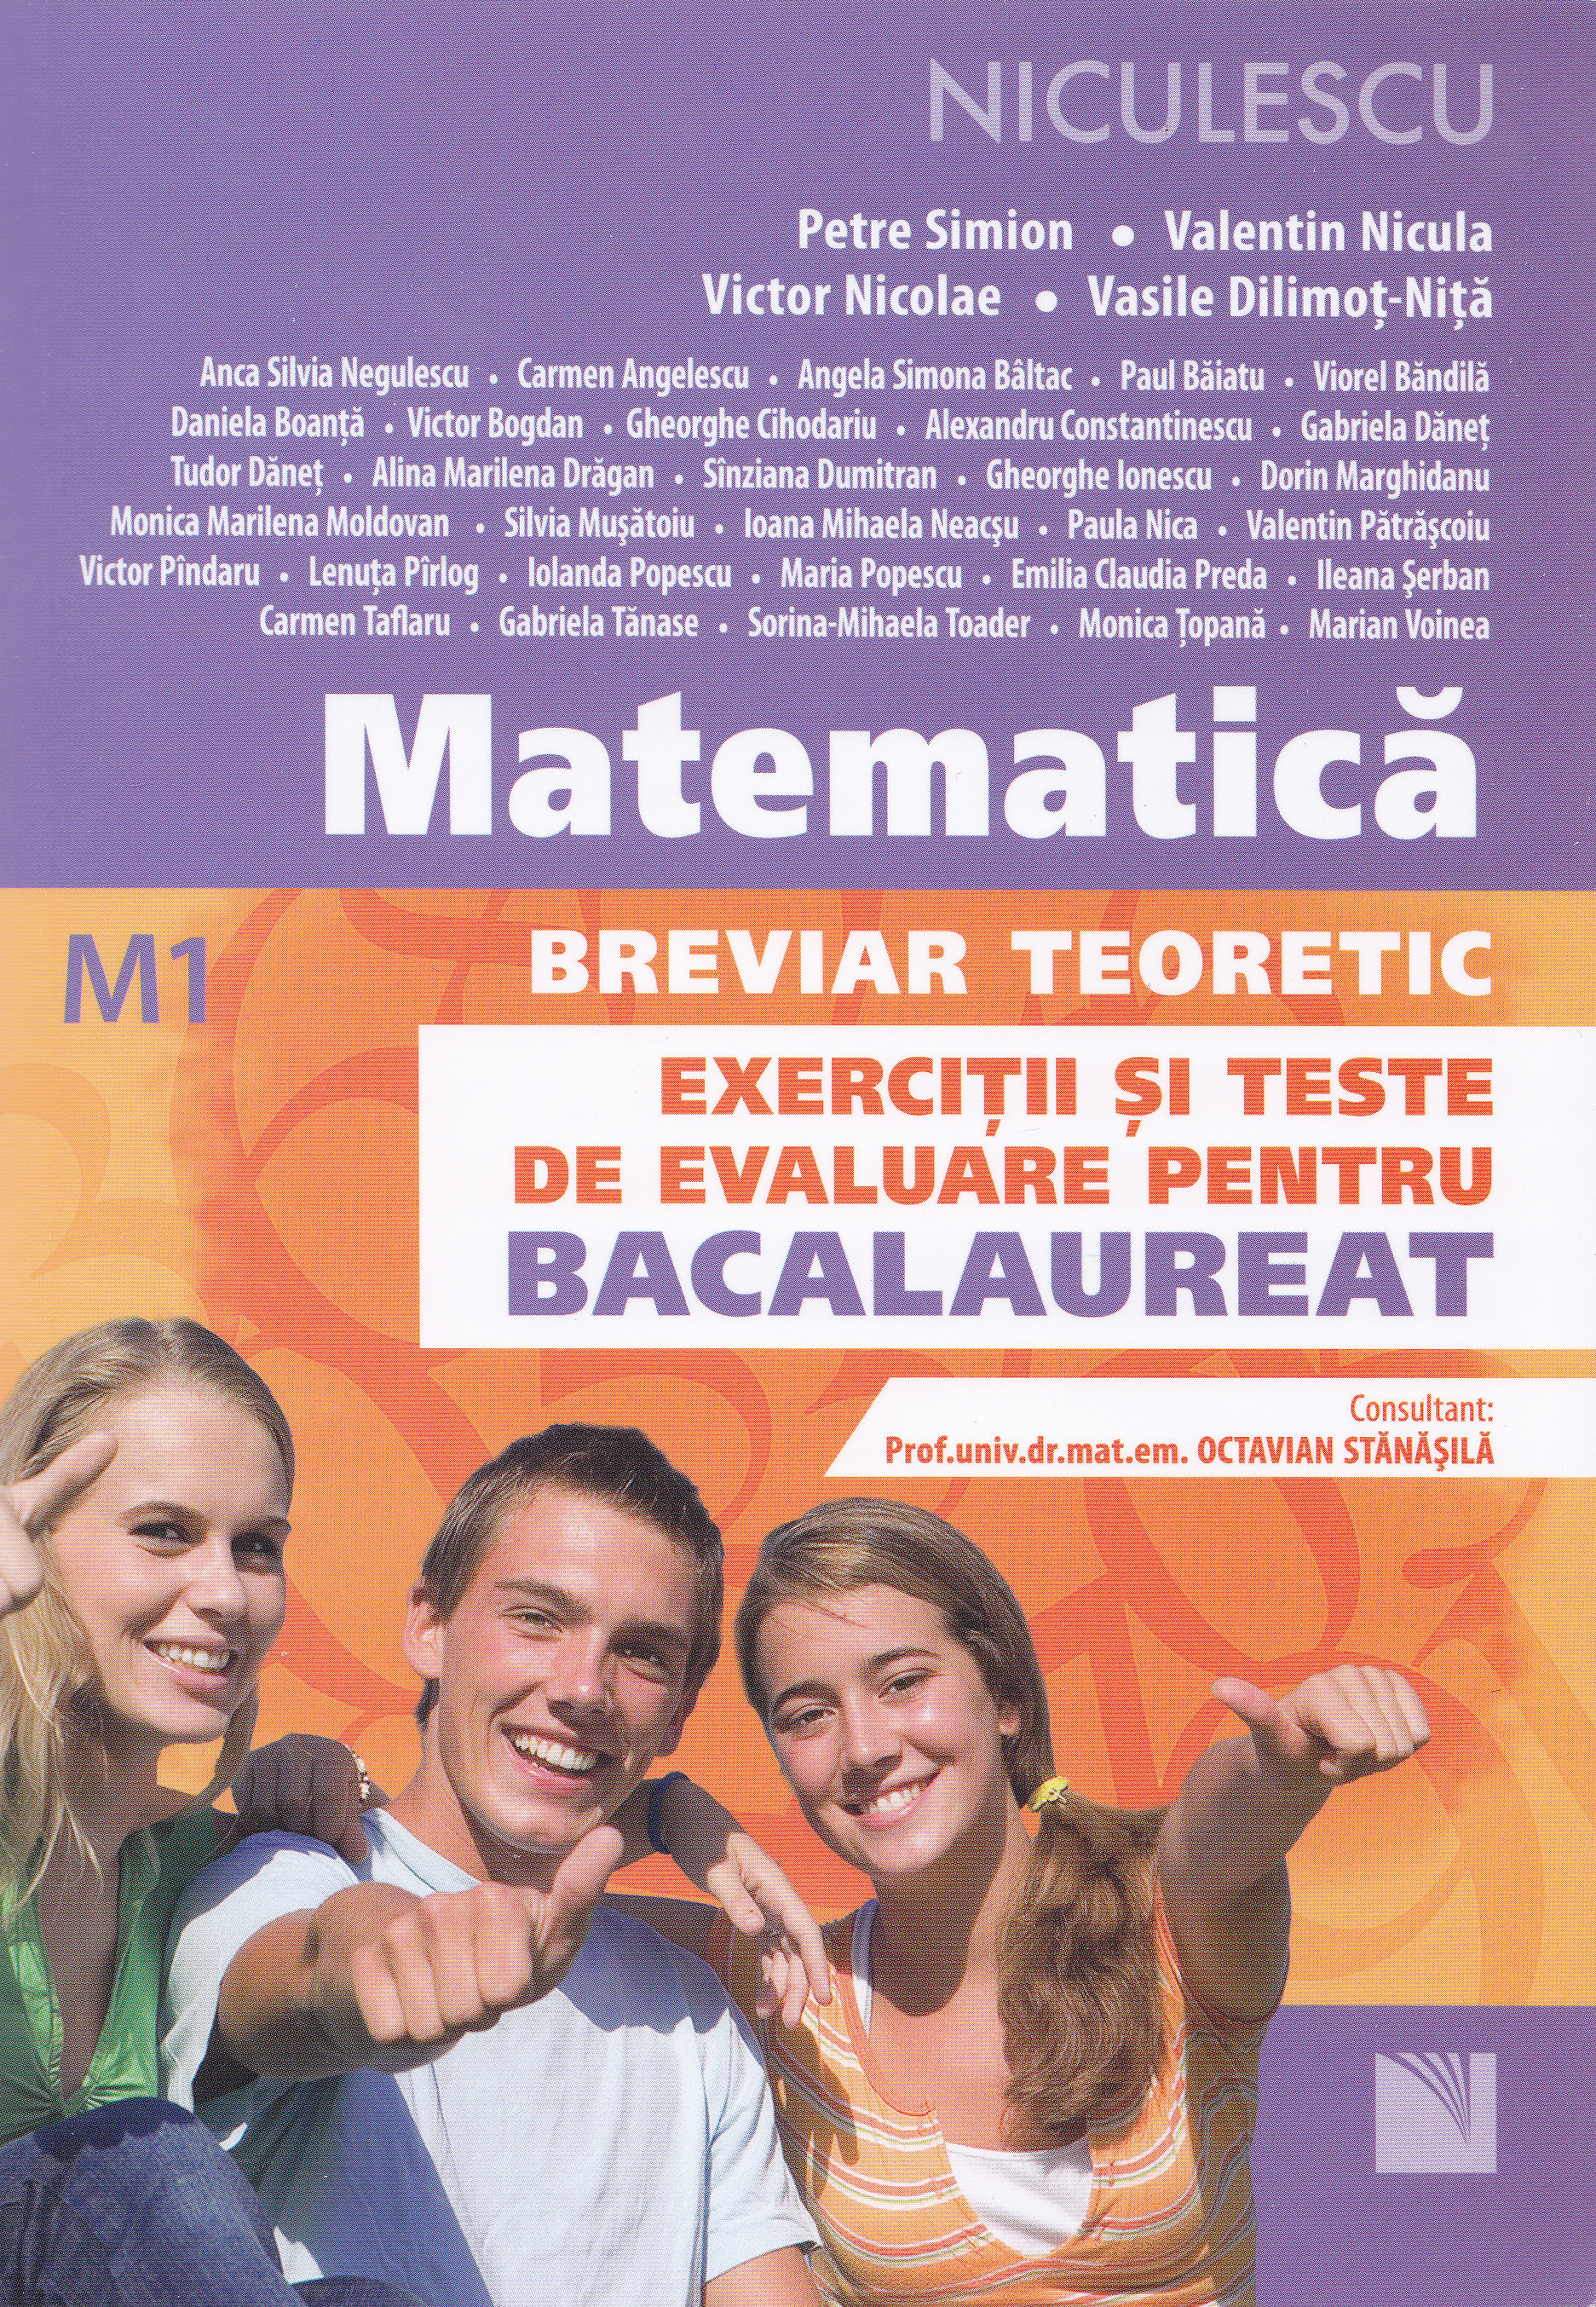 Matematica M1 Breviar teoretic Exercitii si teste de evaluare pentru Bacalaureat ed.2016 - Petre Simion